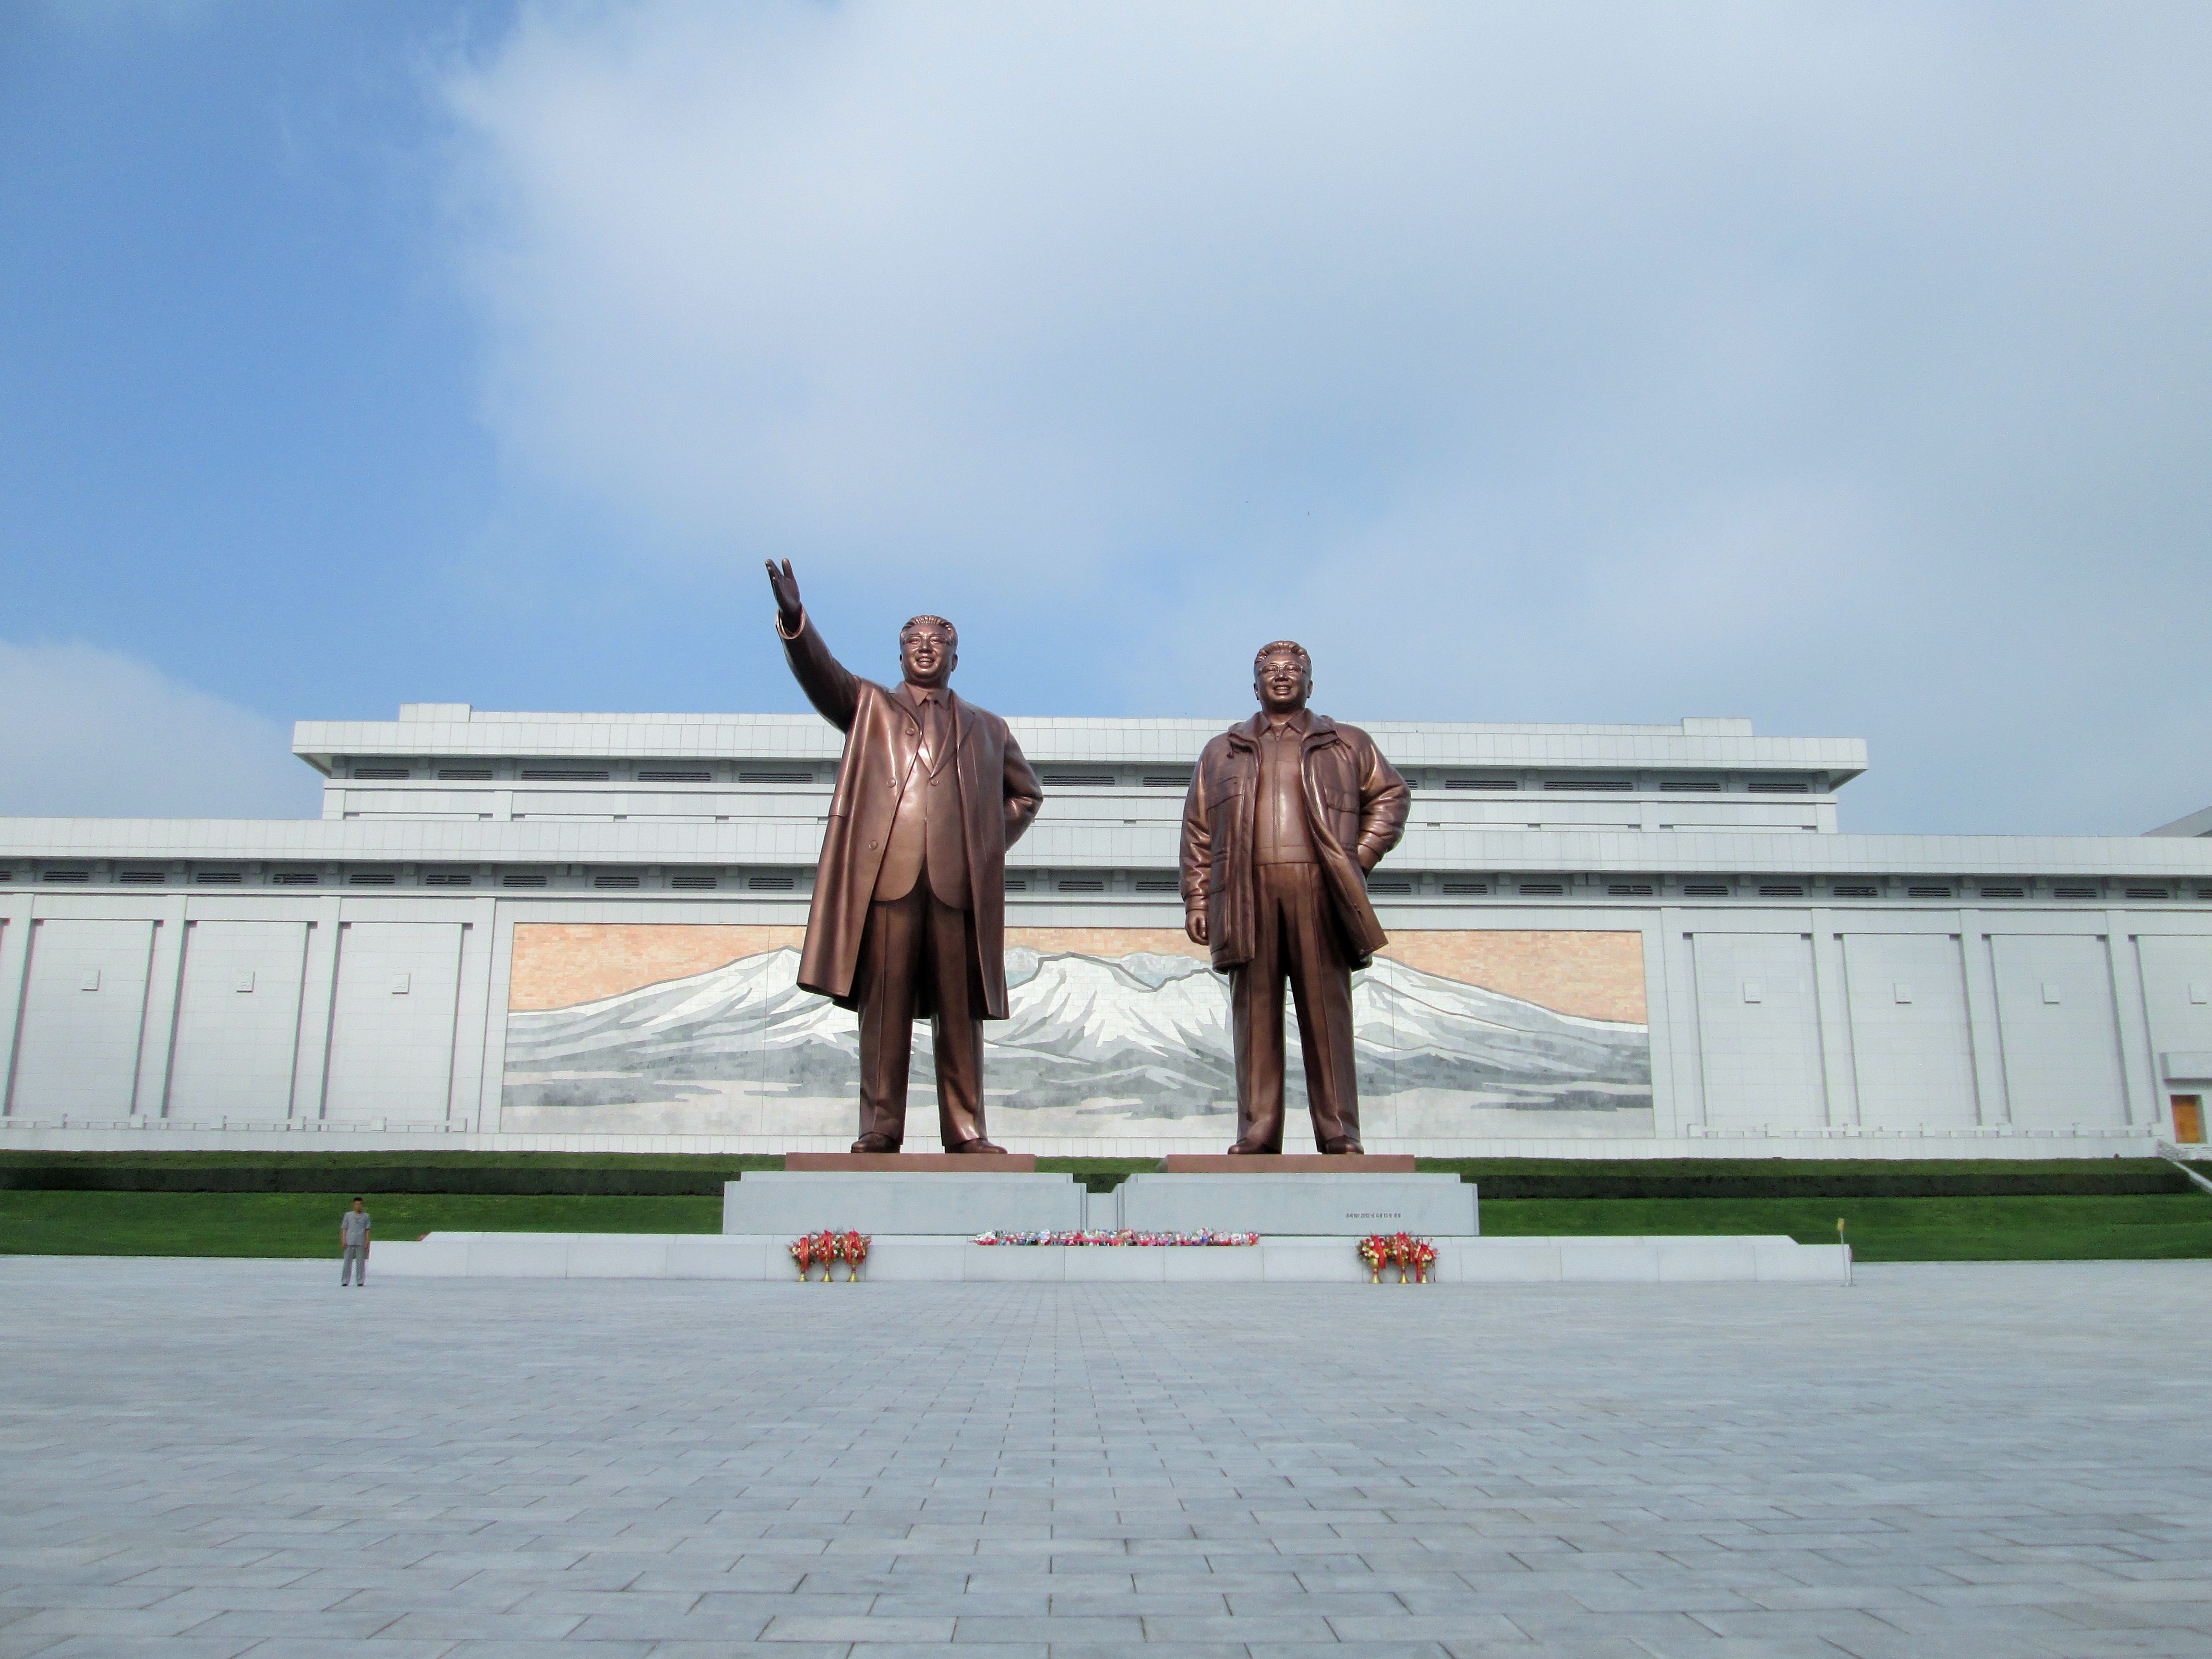 Die monumentalen Bronze-Statuen von Kim Jong Il und Kom Jong Un erstrecken sich auf einem riesigen bepflasterten Platz in die Höhe. Vor den Statuen wurden Blumen abgelegt. Ein Mensch neben den Stauen zeigt dass die Statuen selbst mindestens 7 Menschen hoch sein muss.